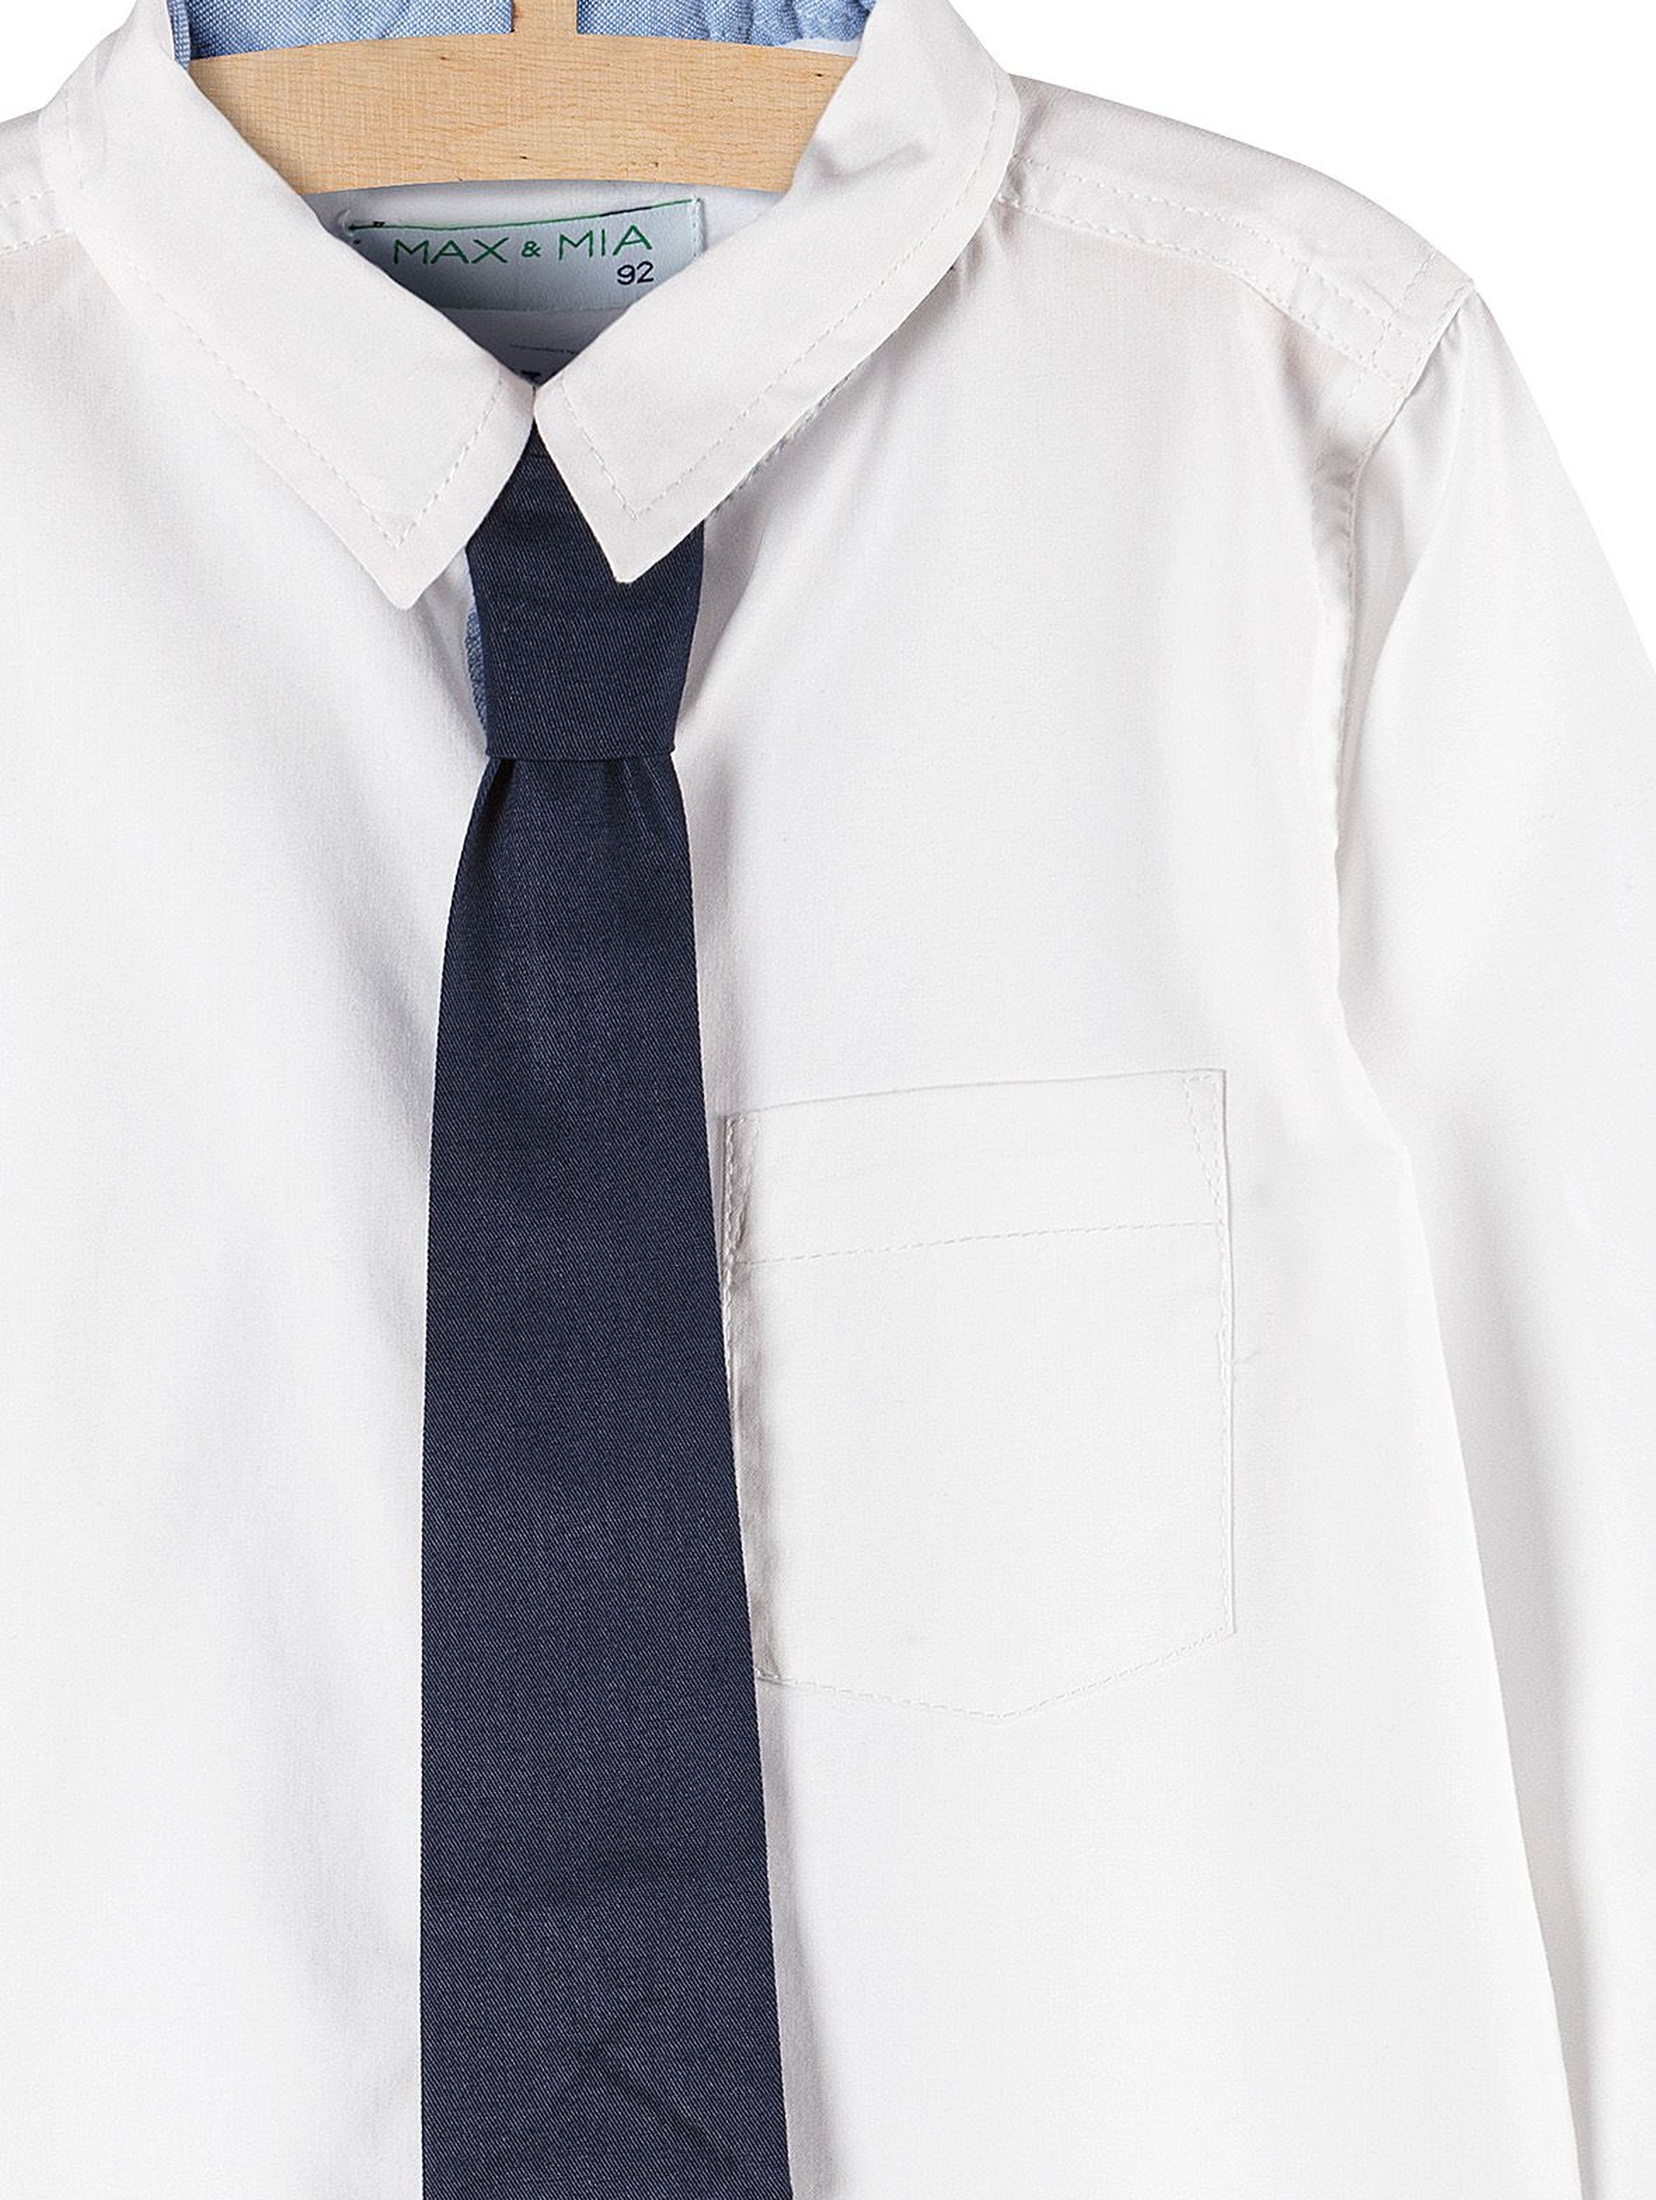 Koszula chłopięca biała z długim rękawem i krawatem